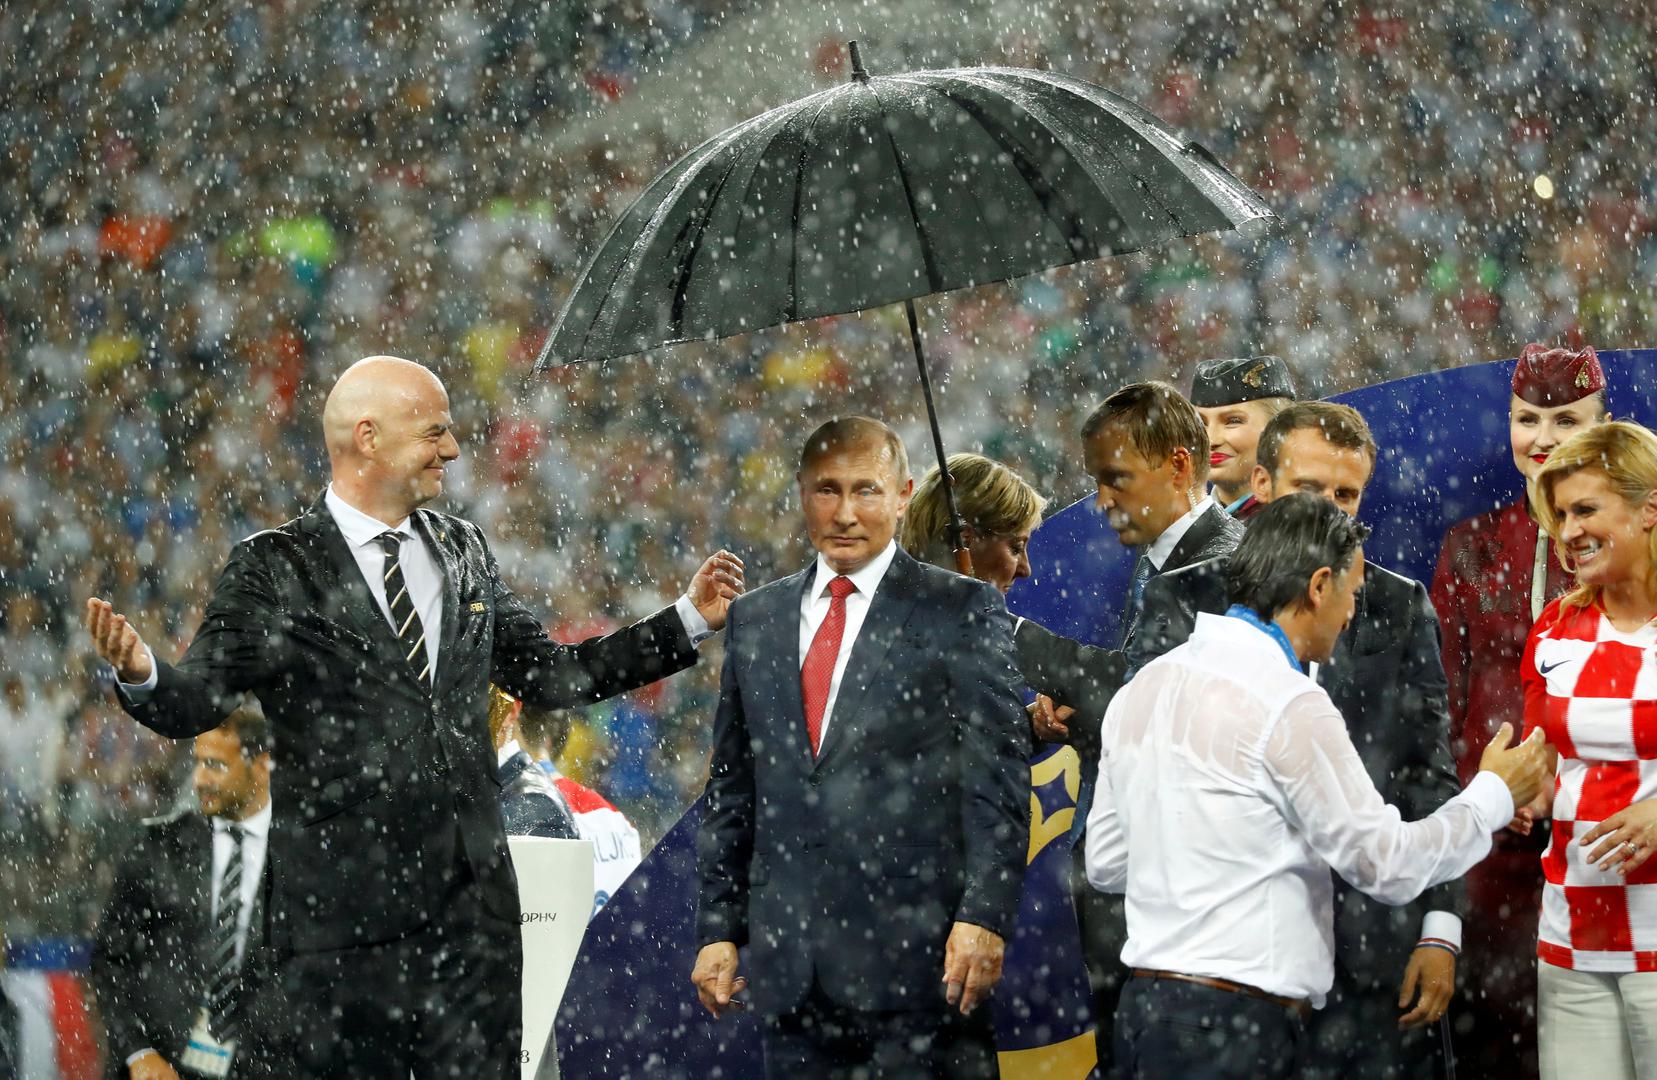 Neposredno prije početka dodjela medalja počela je padati jaka kiša i odmah je dojurio jedan čovjek s kišobranom i stavio ga iznad Putina.